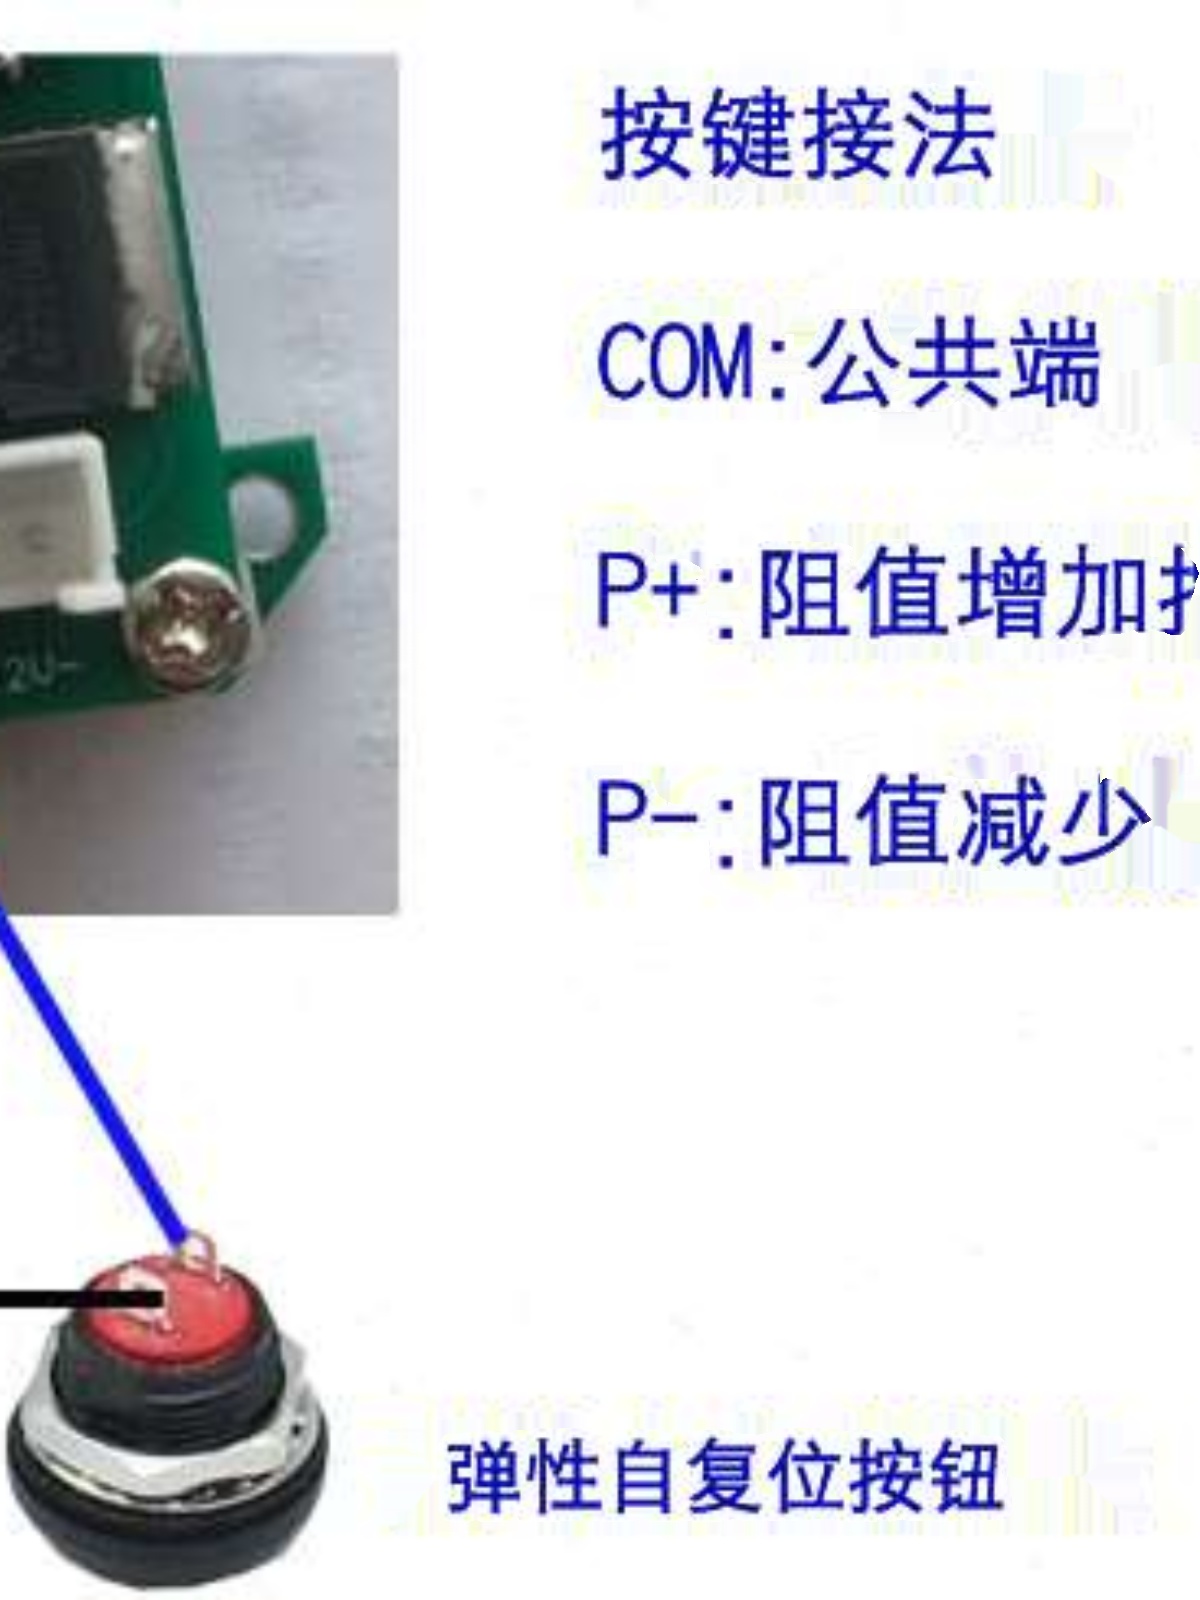 按键调节电位器阻值并显示 数显电位器 手按电位器 旋钮改按键